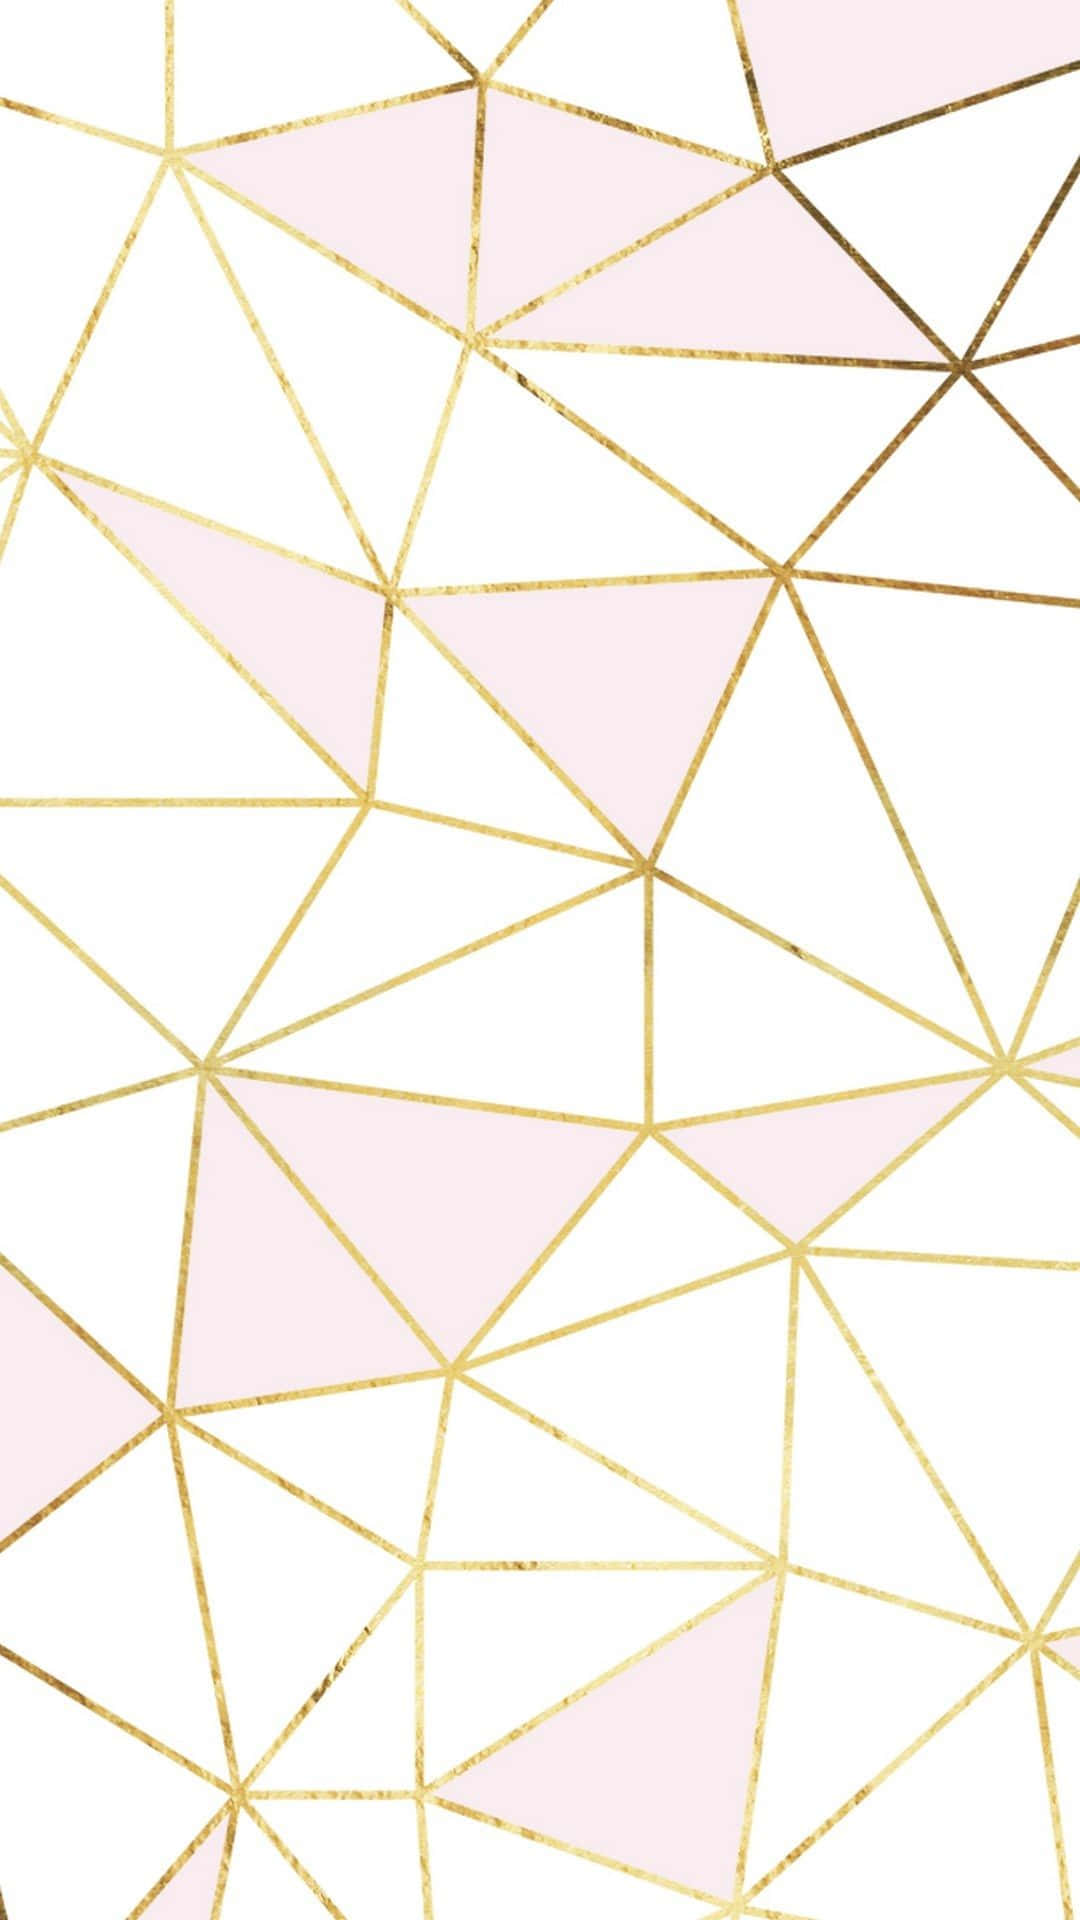 Líneageométrica De Mármol Negro Y Oro Rosado. Fondo de pantalla